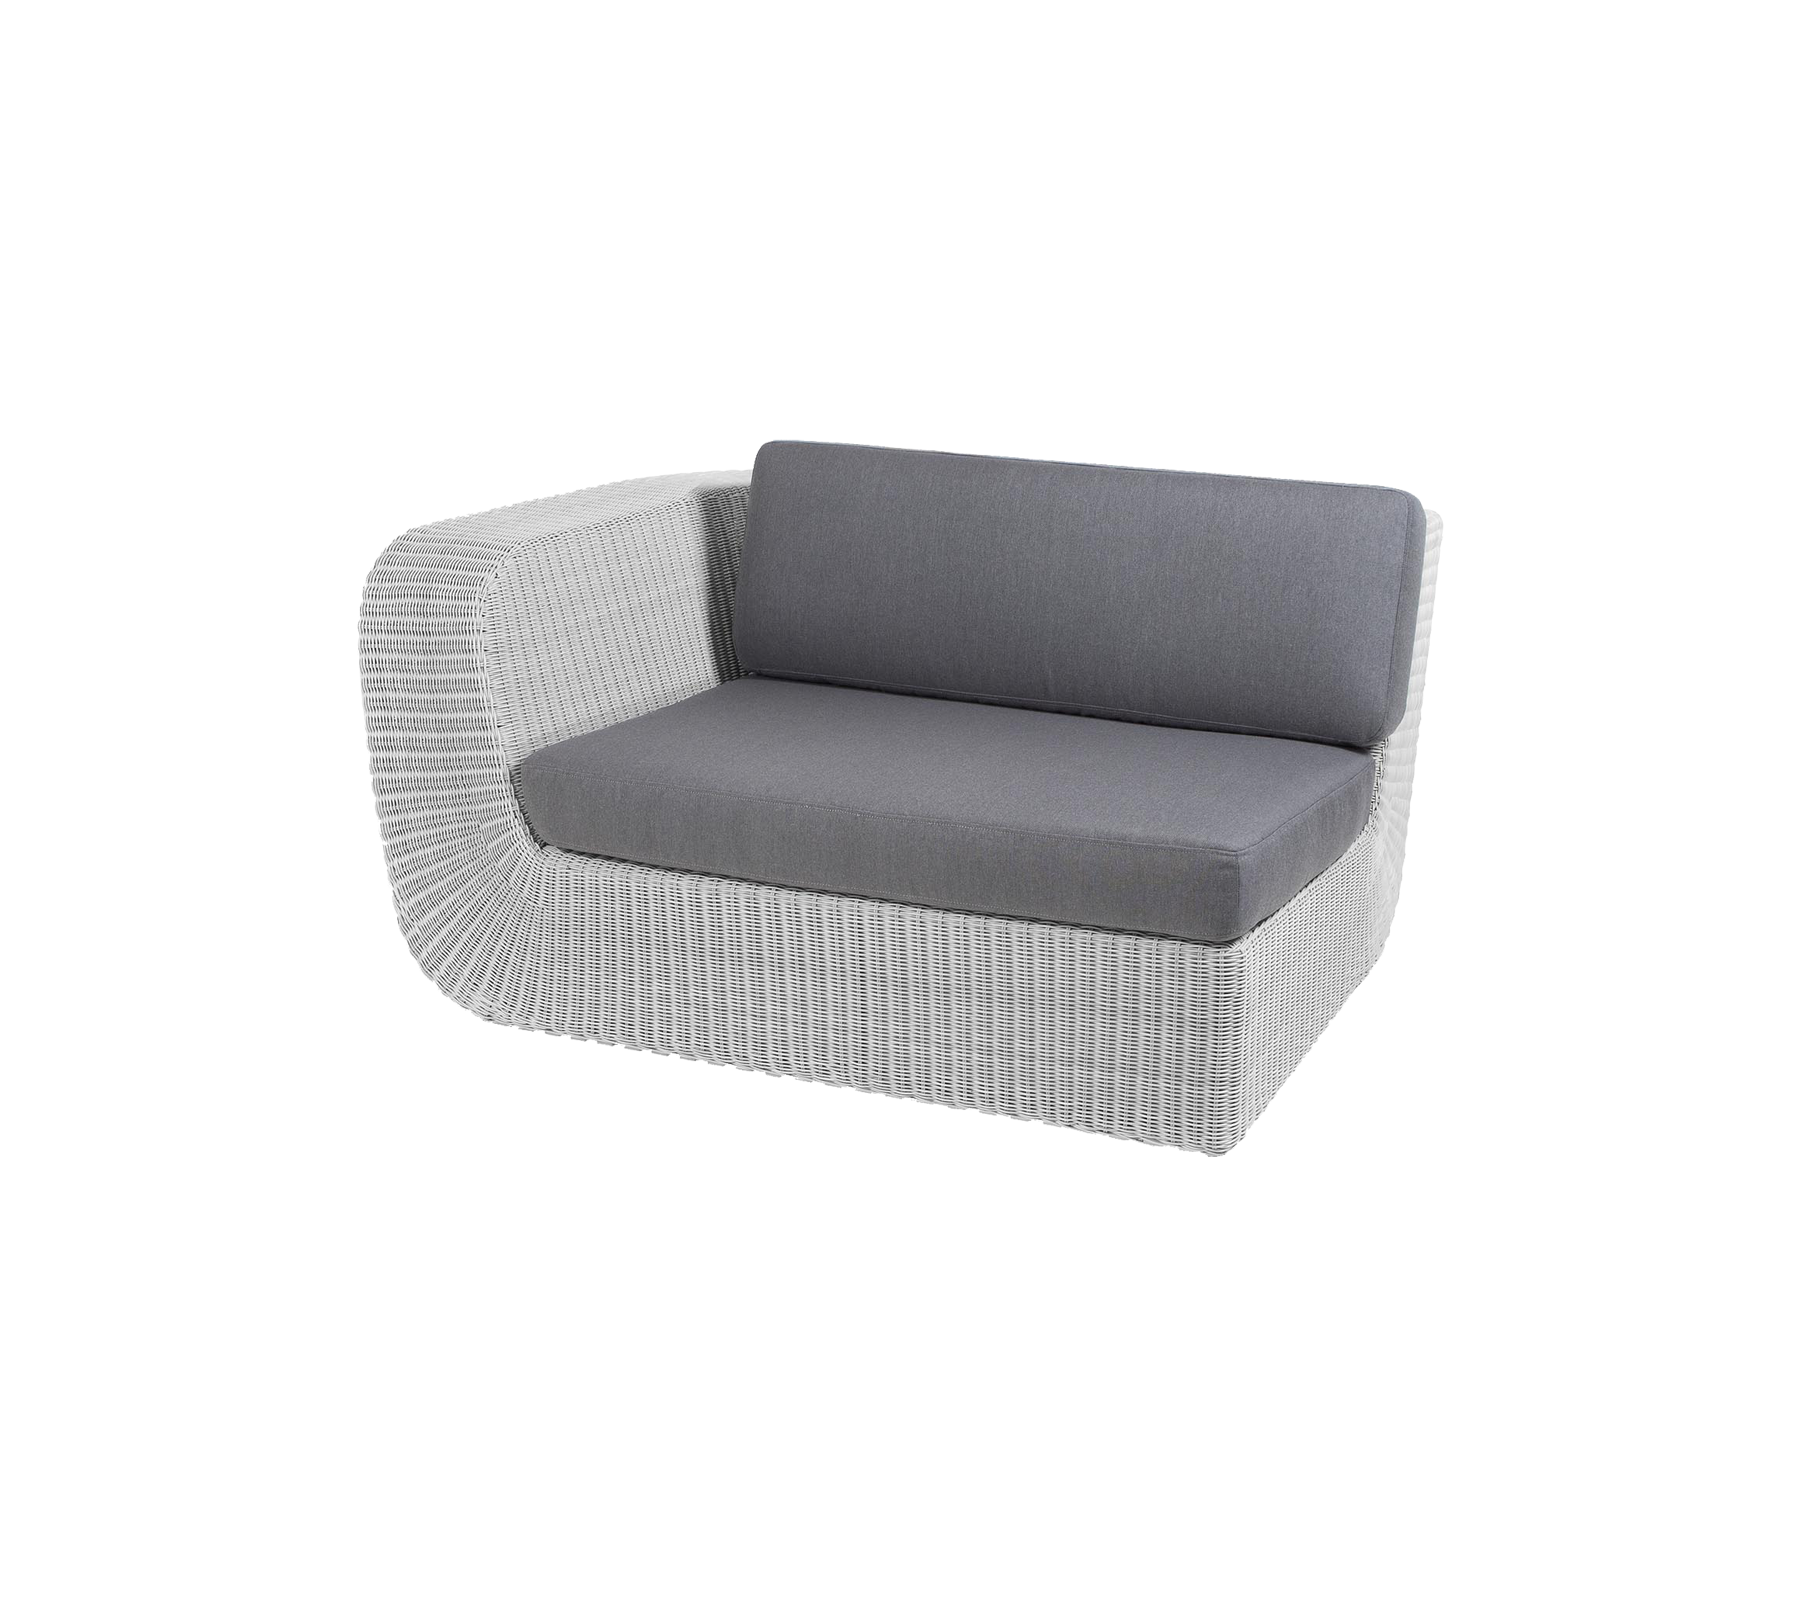 Cushion set, Savannah 2-seater sofa, right module